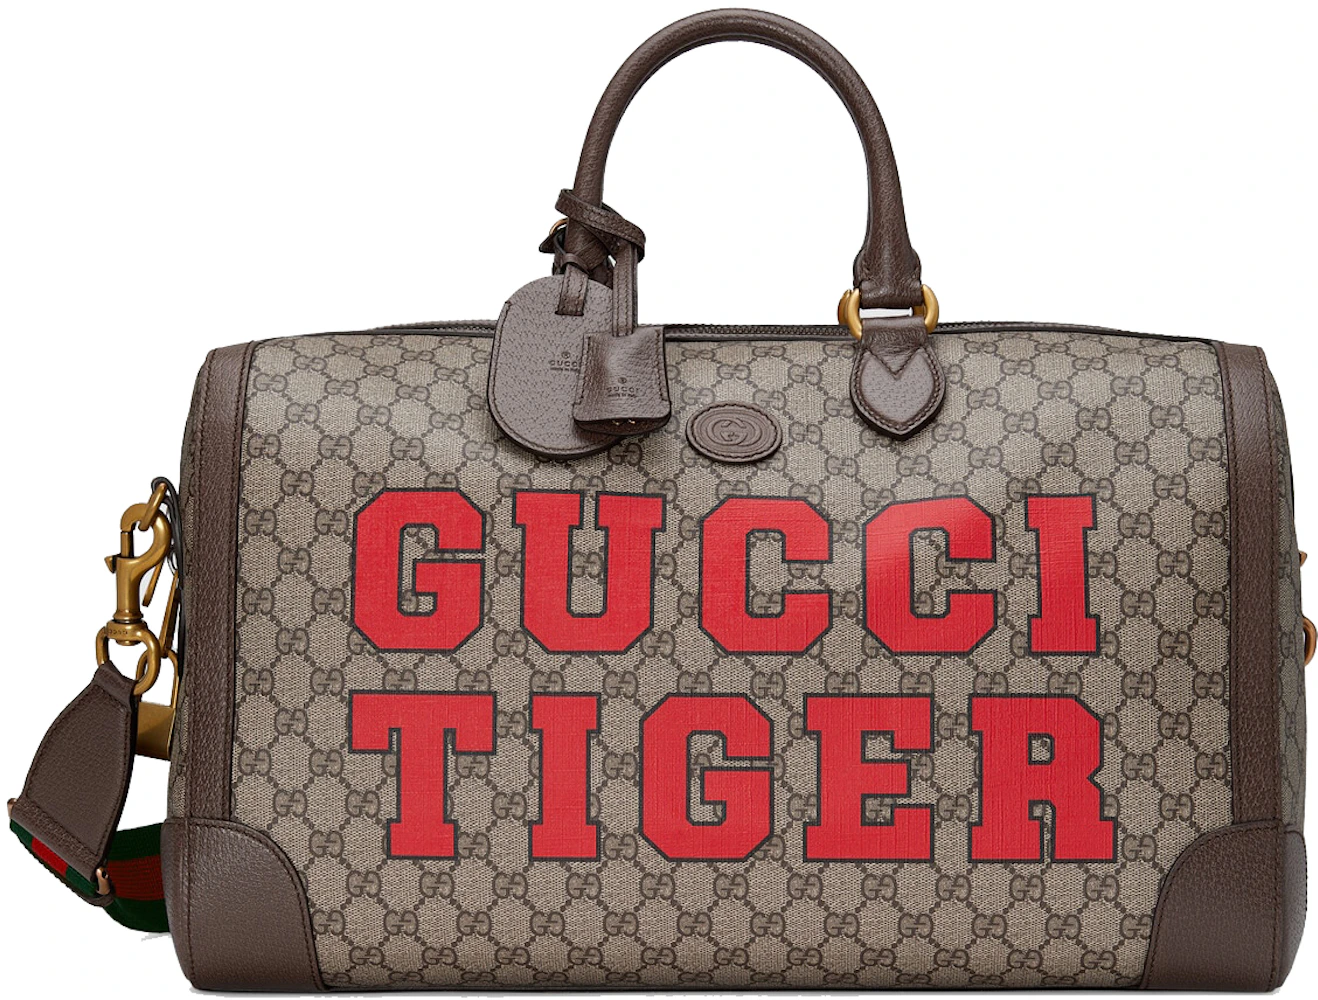 Gucci Tiger Crossbody Bags